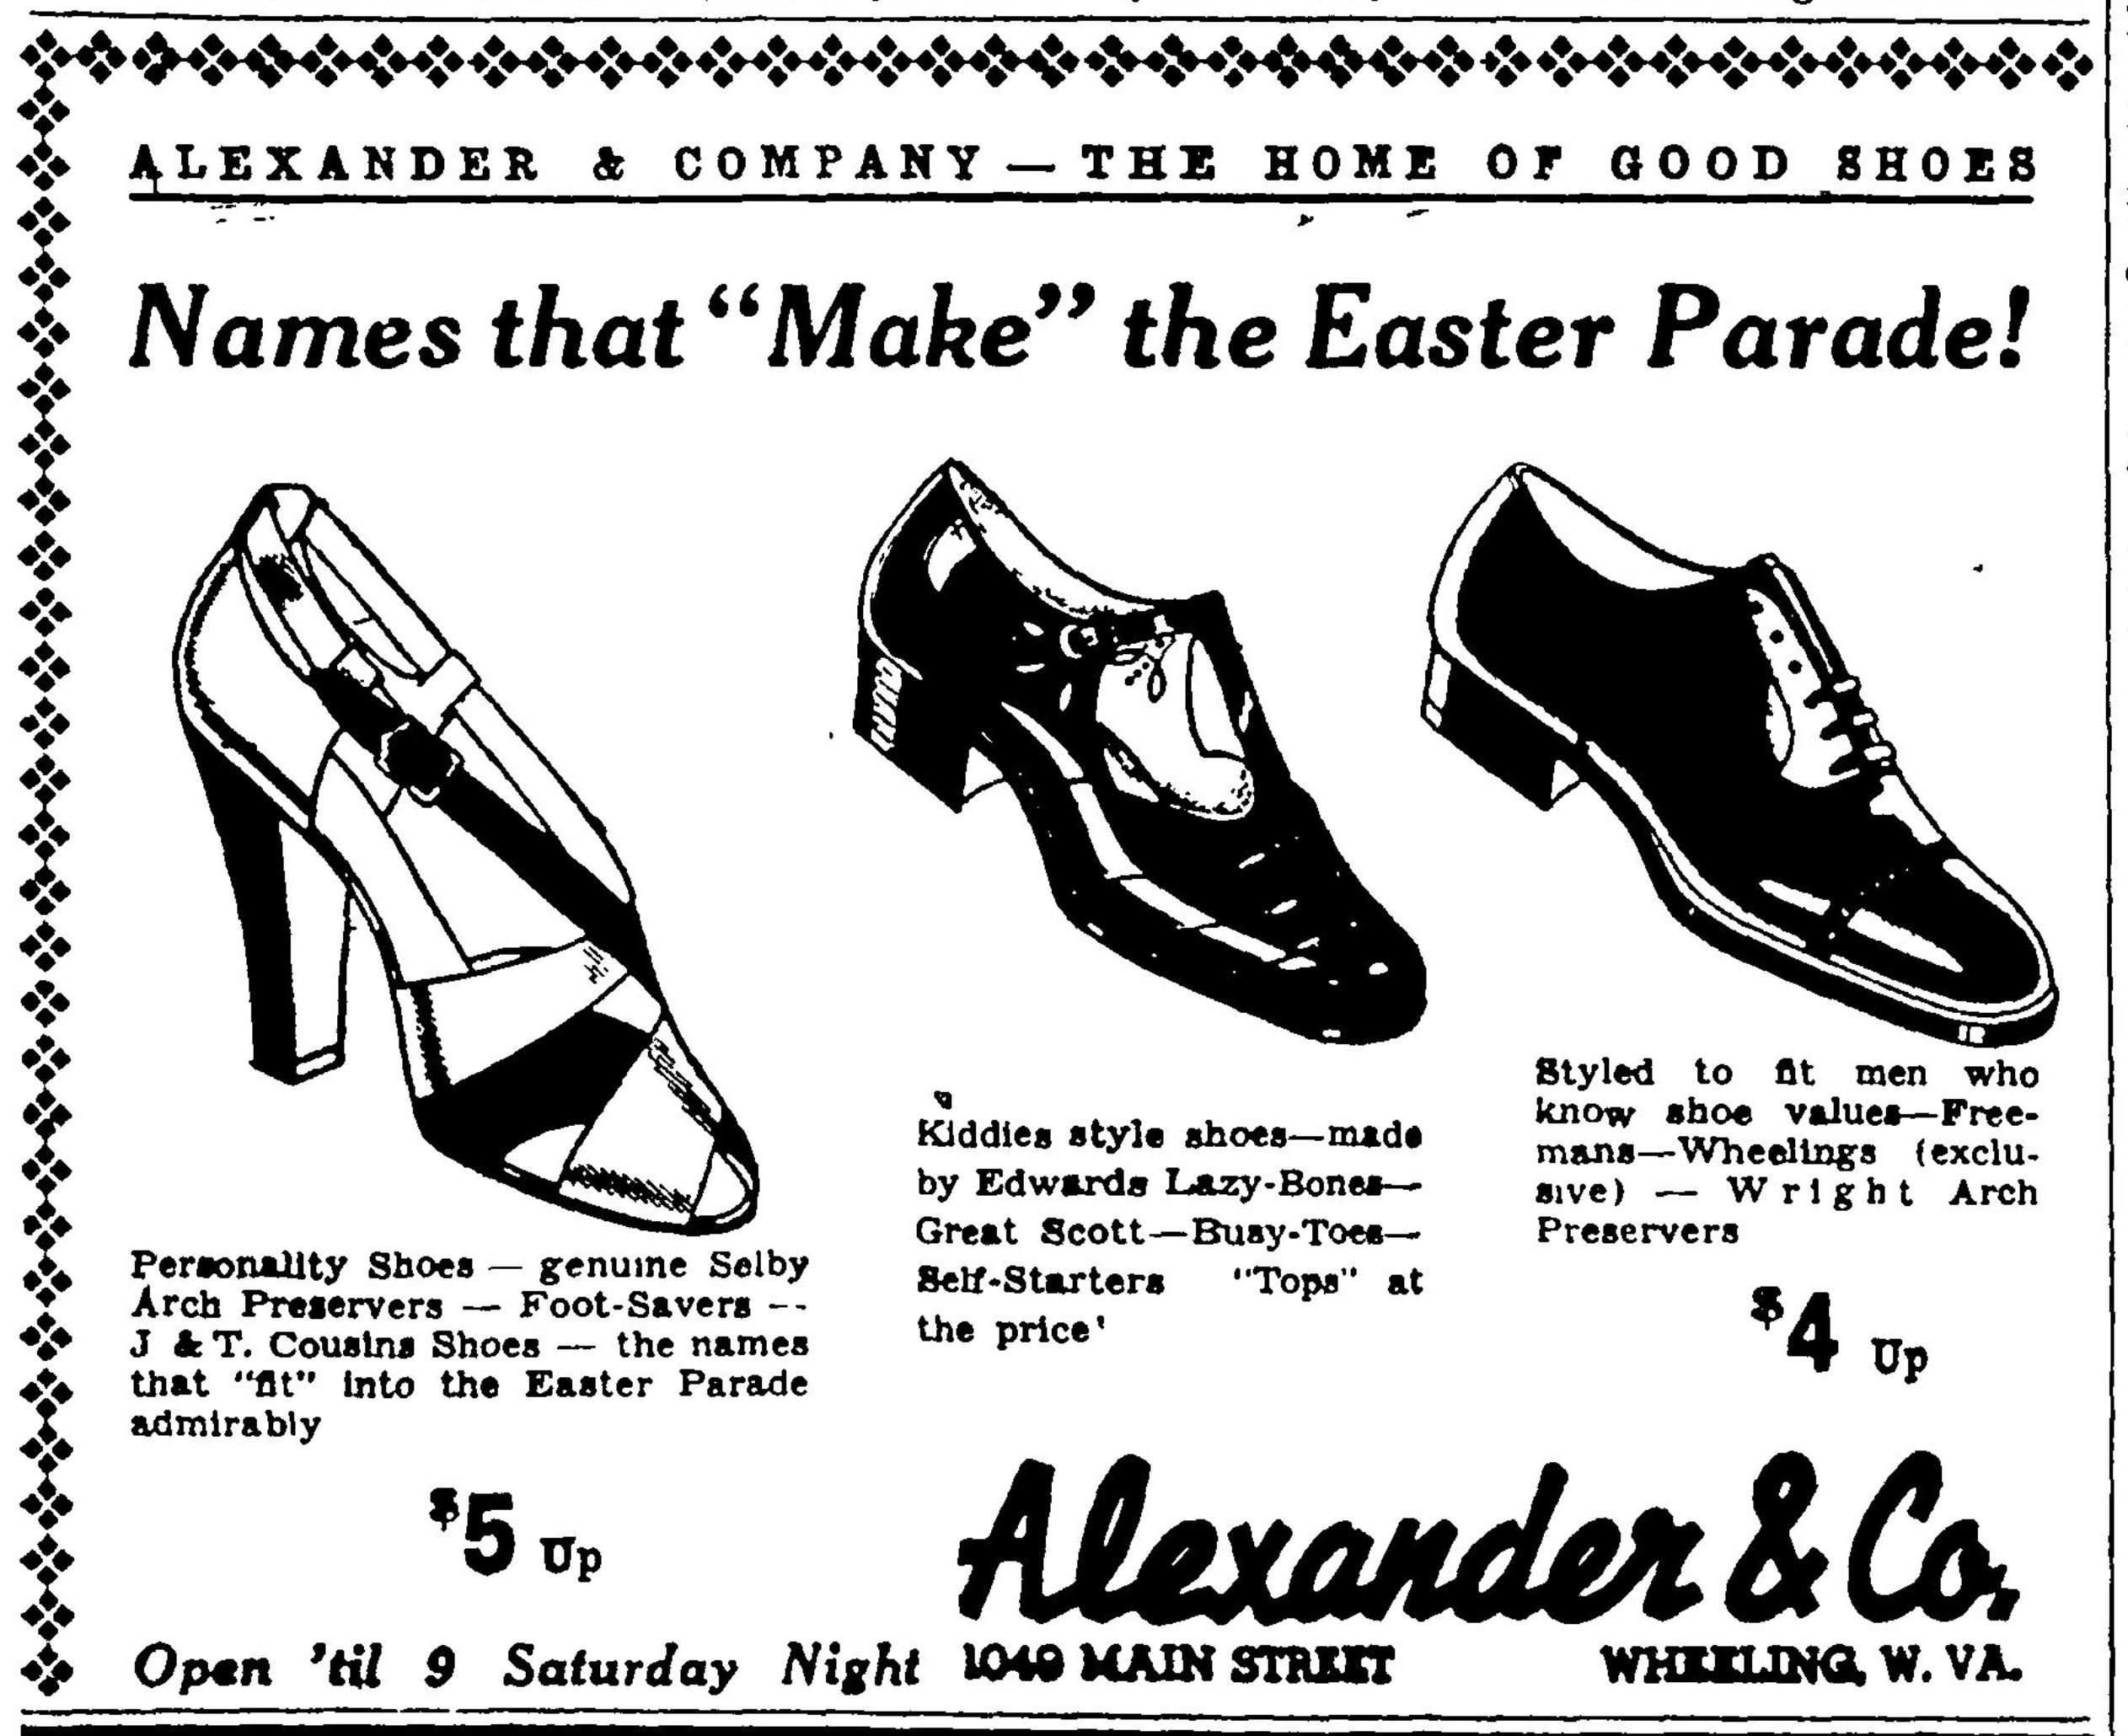 Alexander & Co - Wheeling Intelligencer, April 15, 1938